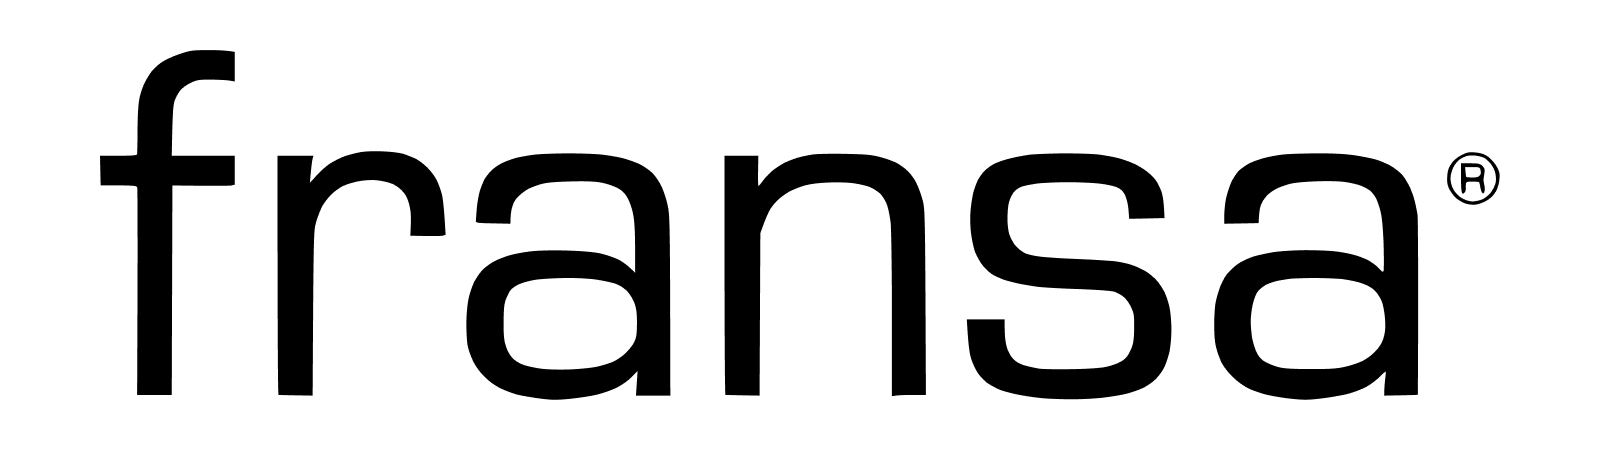 Logo značky fransa